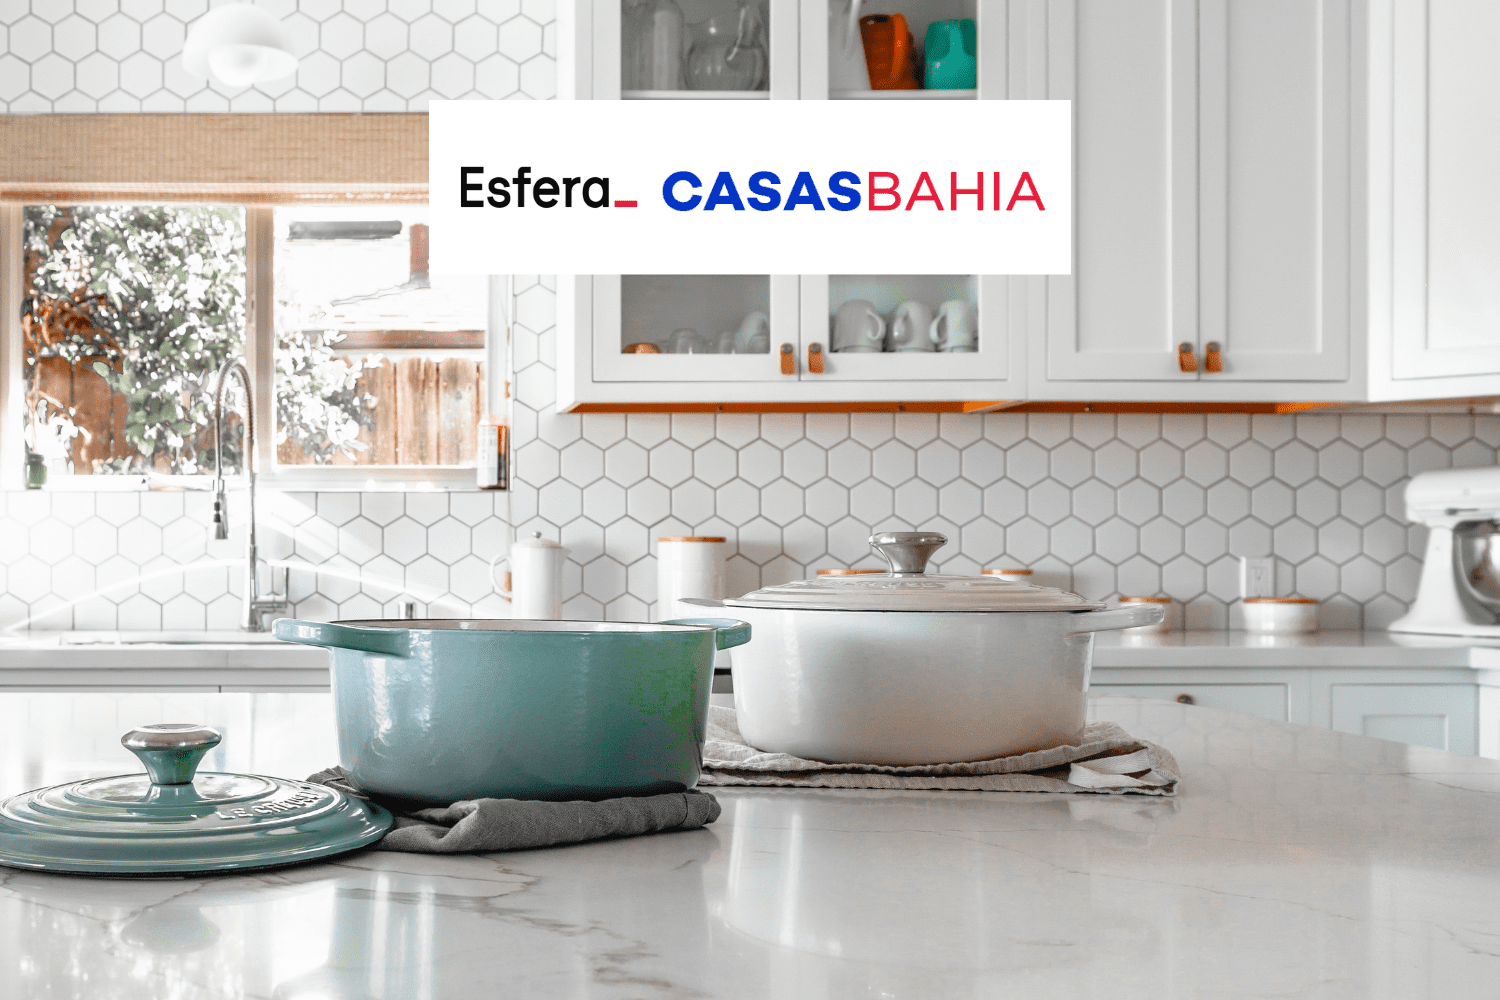 panelas em uma mesa na cozinha com logo Esfera e Casas Bahia 7 pontos Esfera